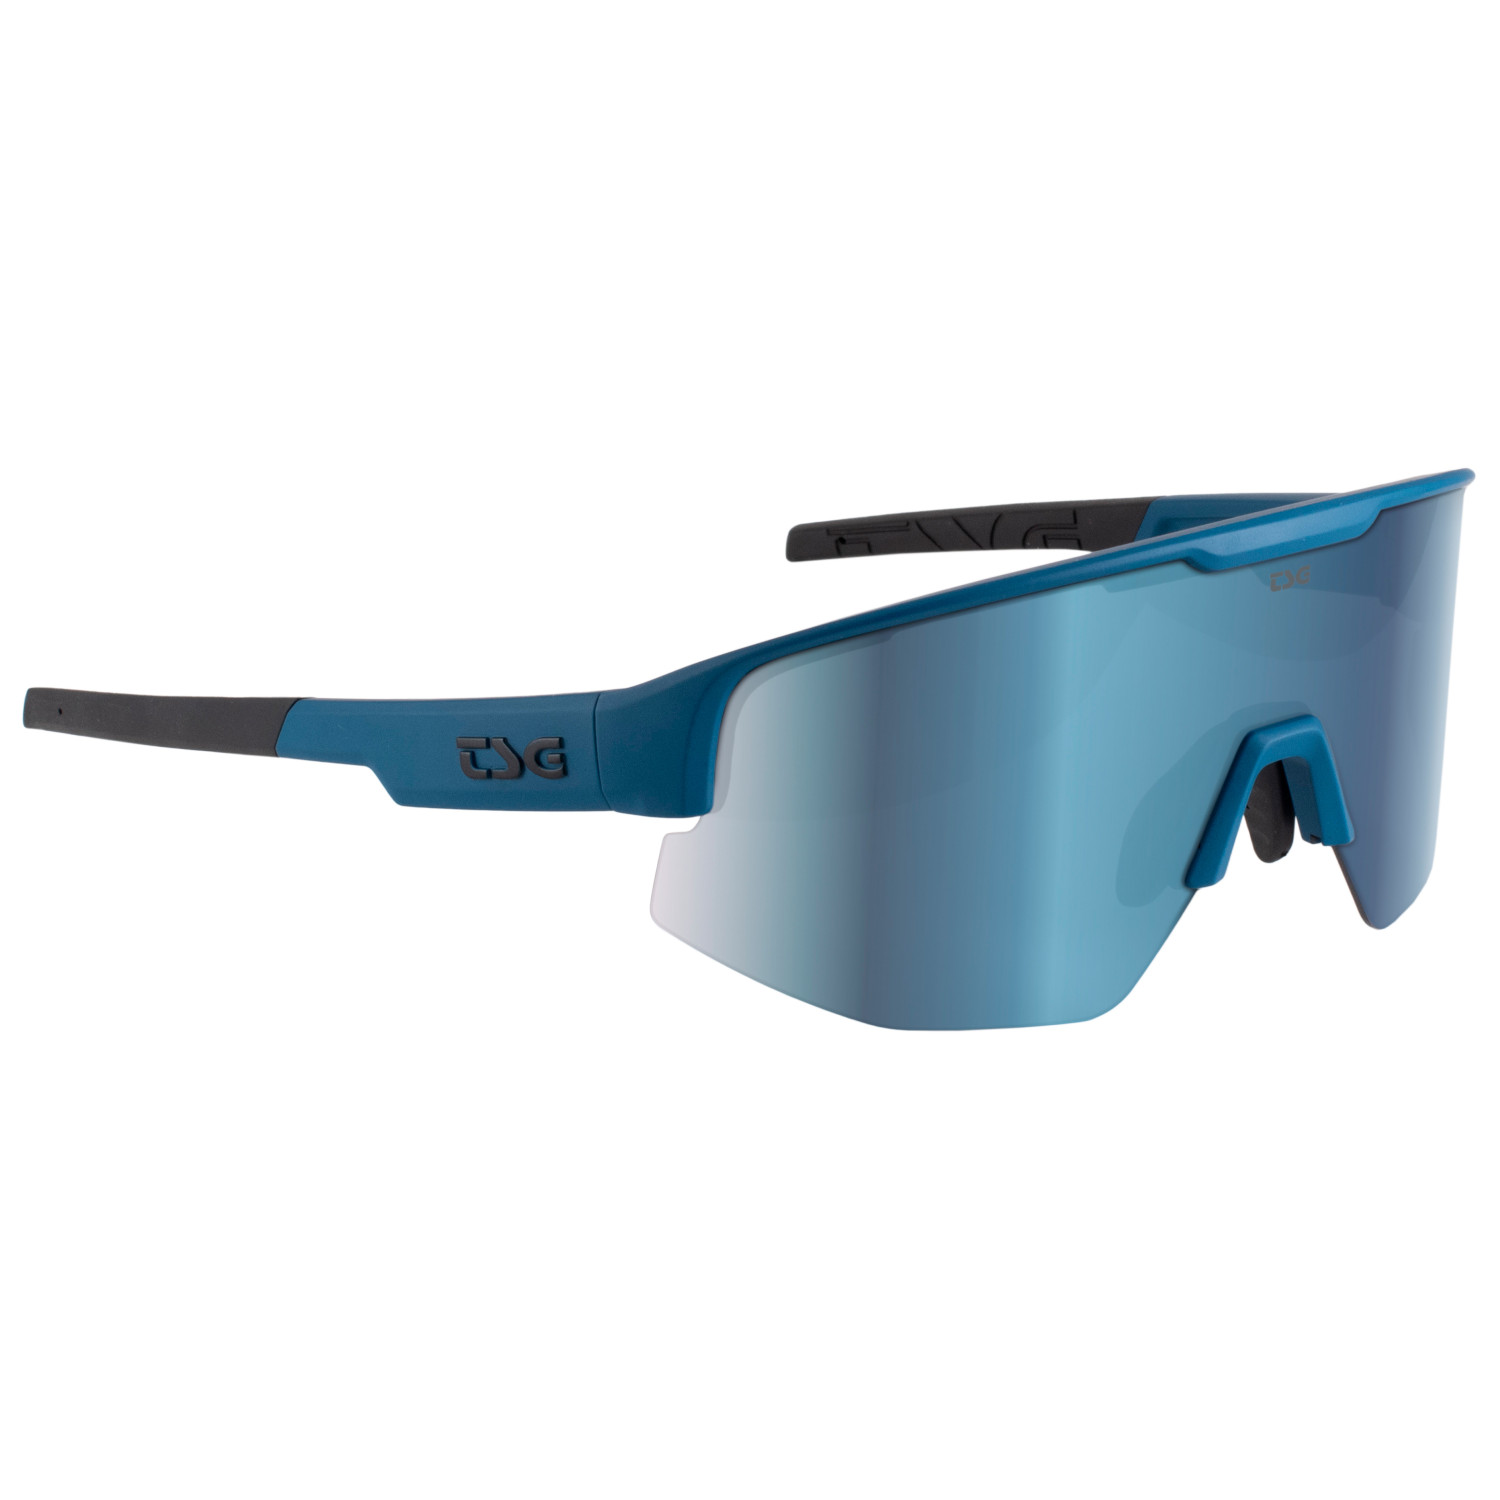 Велосипедные очки Tsg Loam Sunglasses, темно синий фотографии